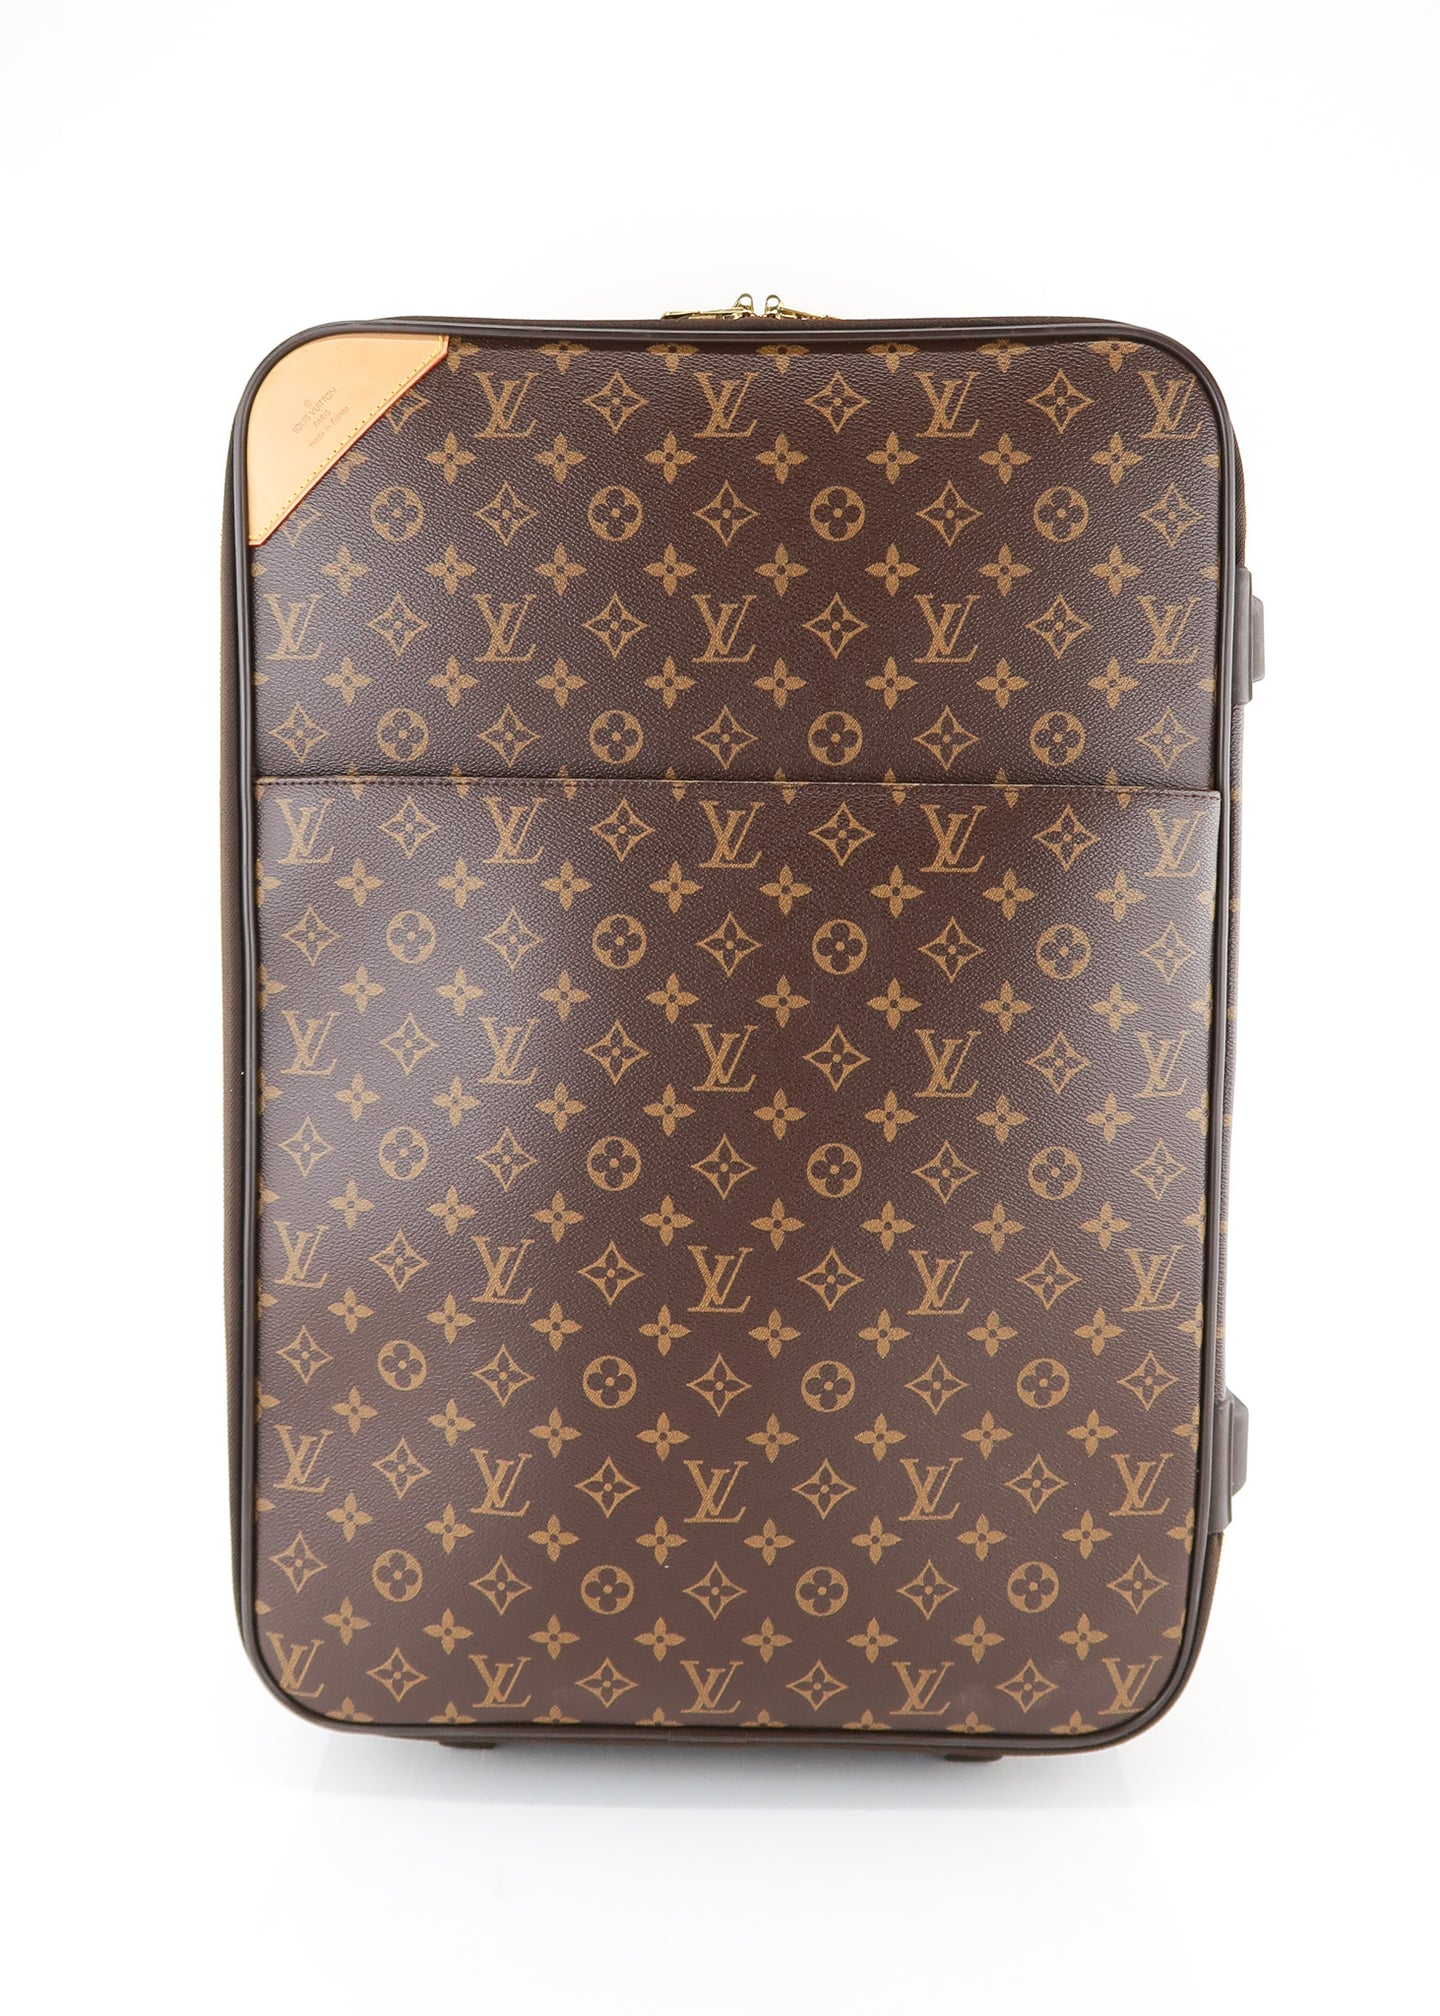 Louis Vuitton Monogram Canvas Pegase 55 Trolley Rolling Suitcase